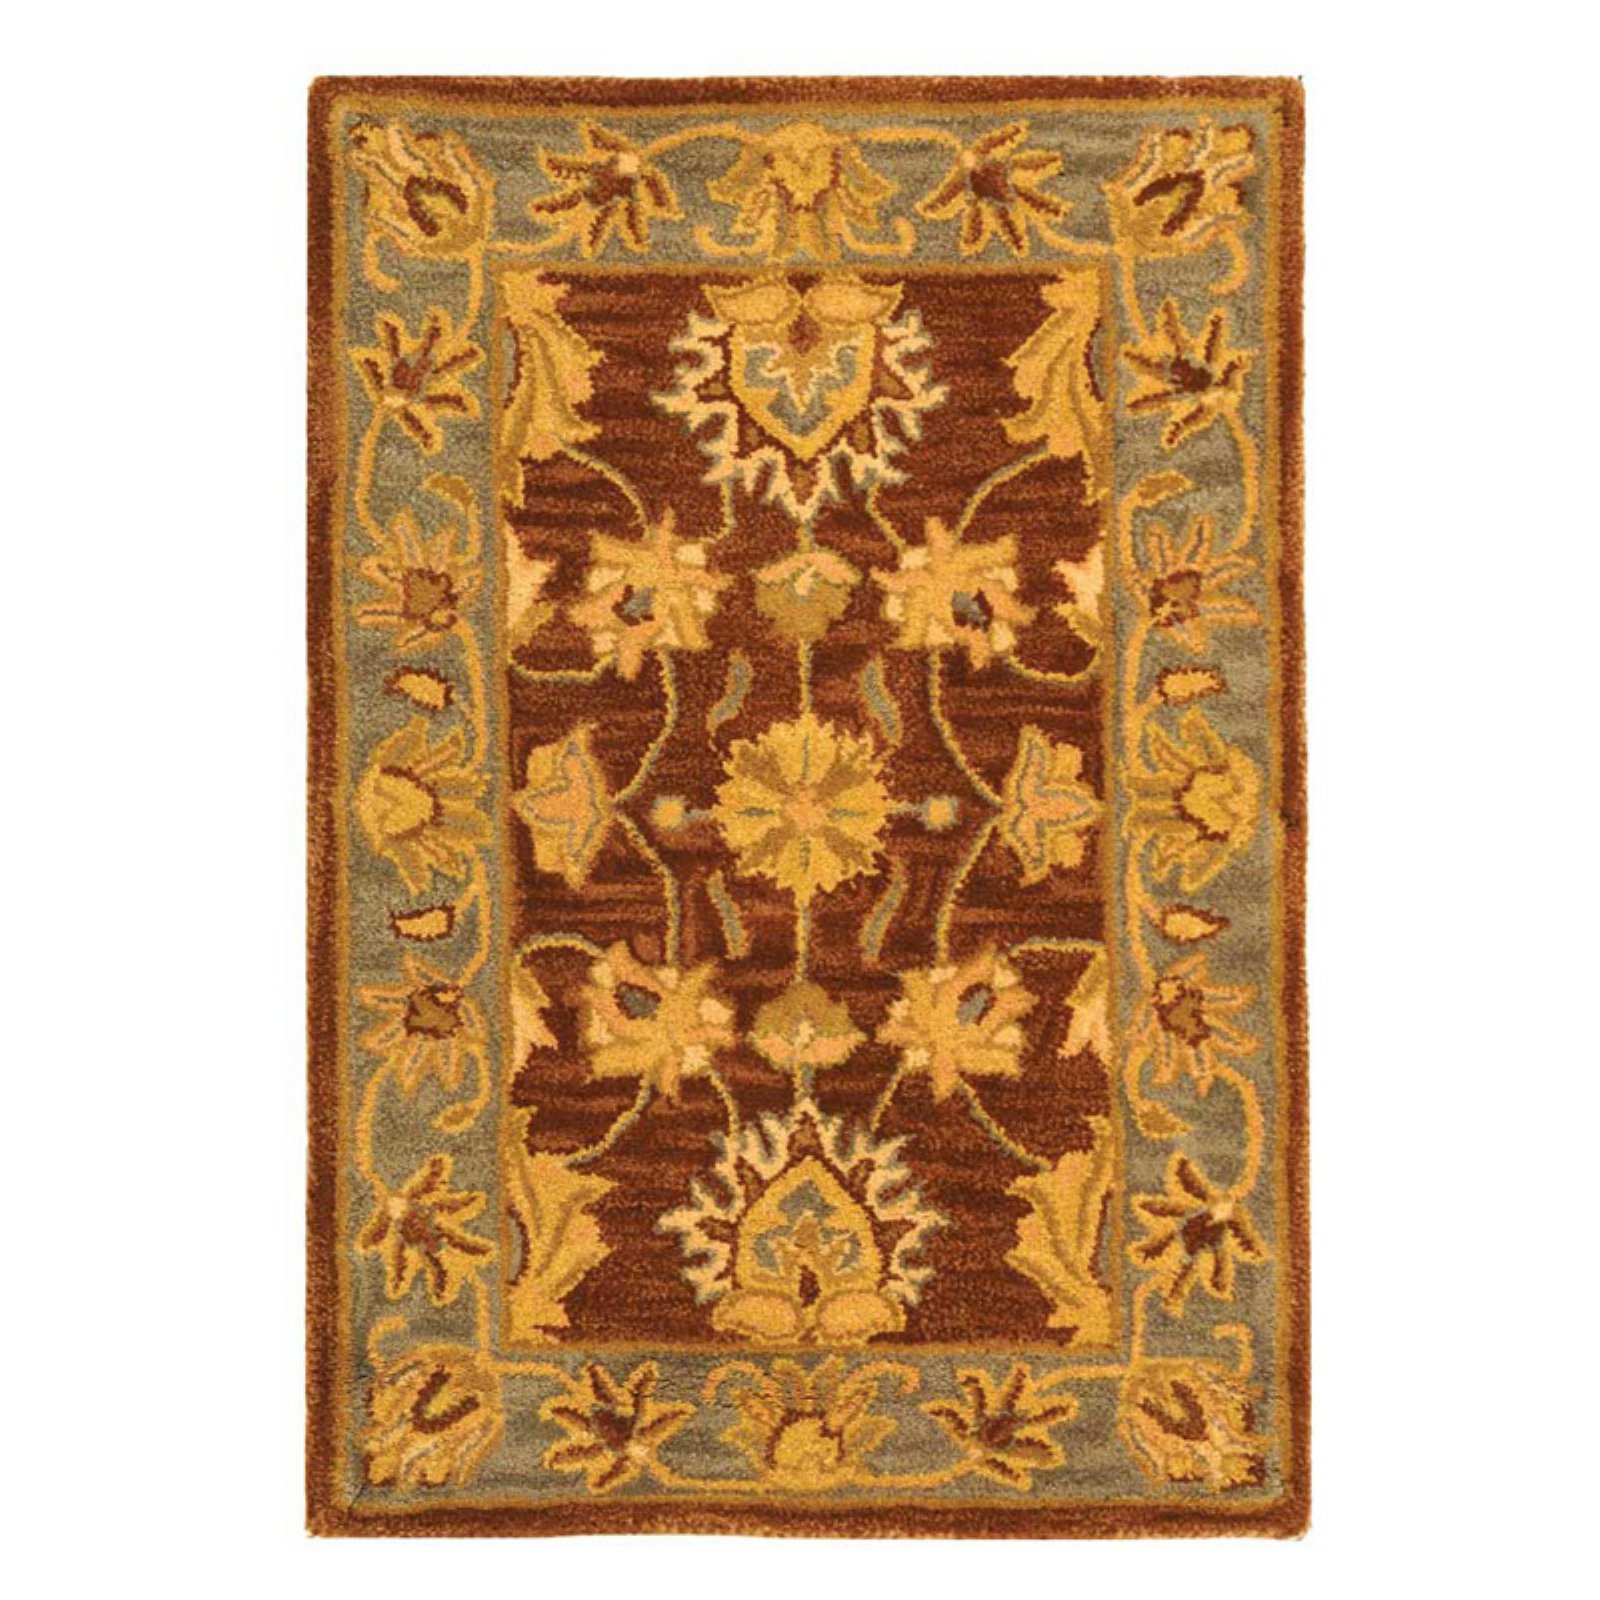 SAFAVIEH Heritage Regis Traditional Wool Area Rug, Brown/Blue, 6' x 9' - image 1 of 9